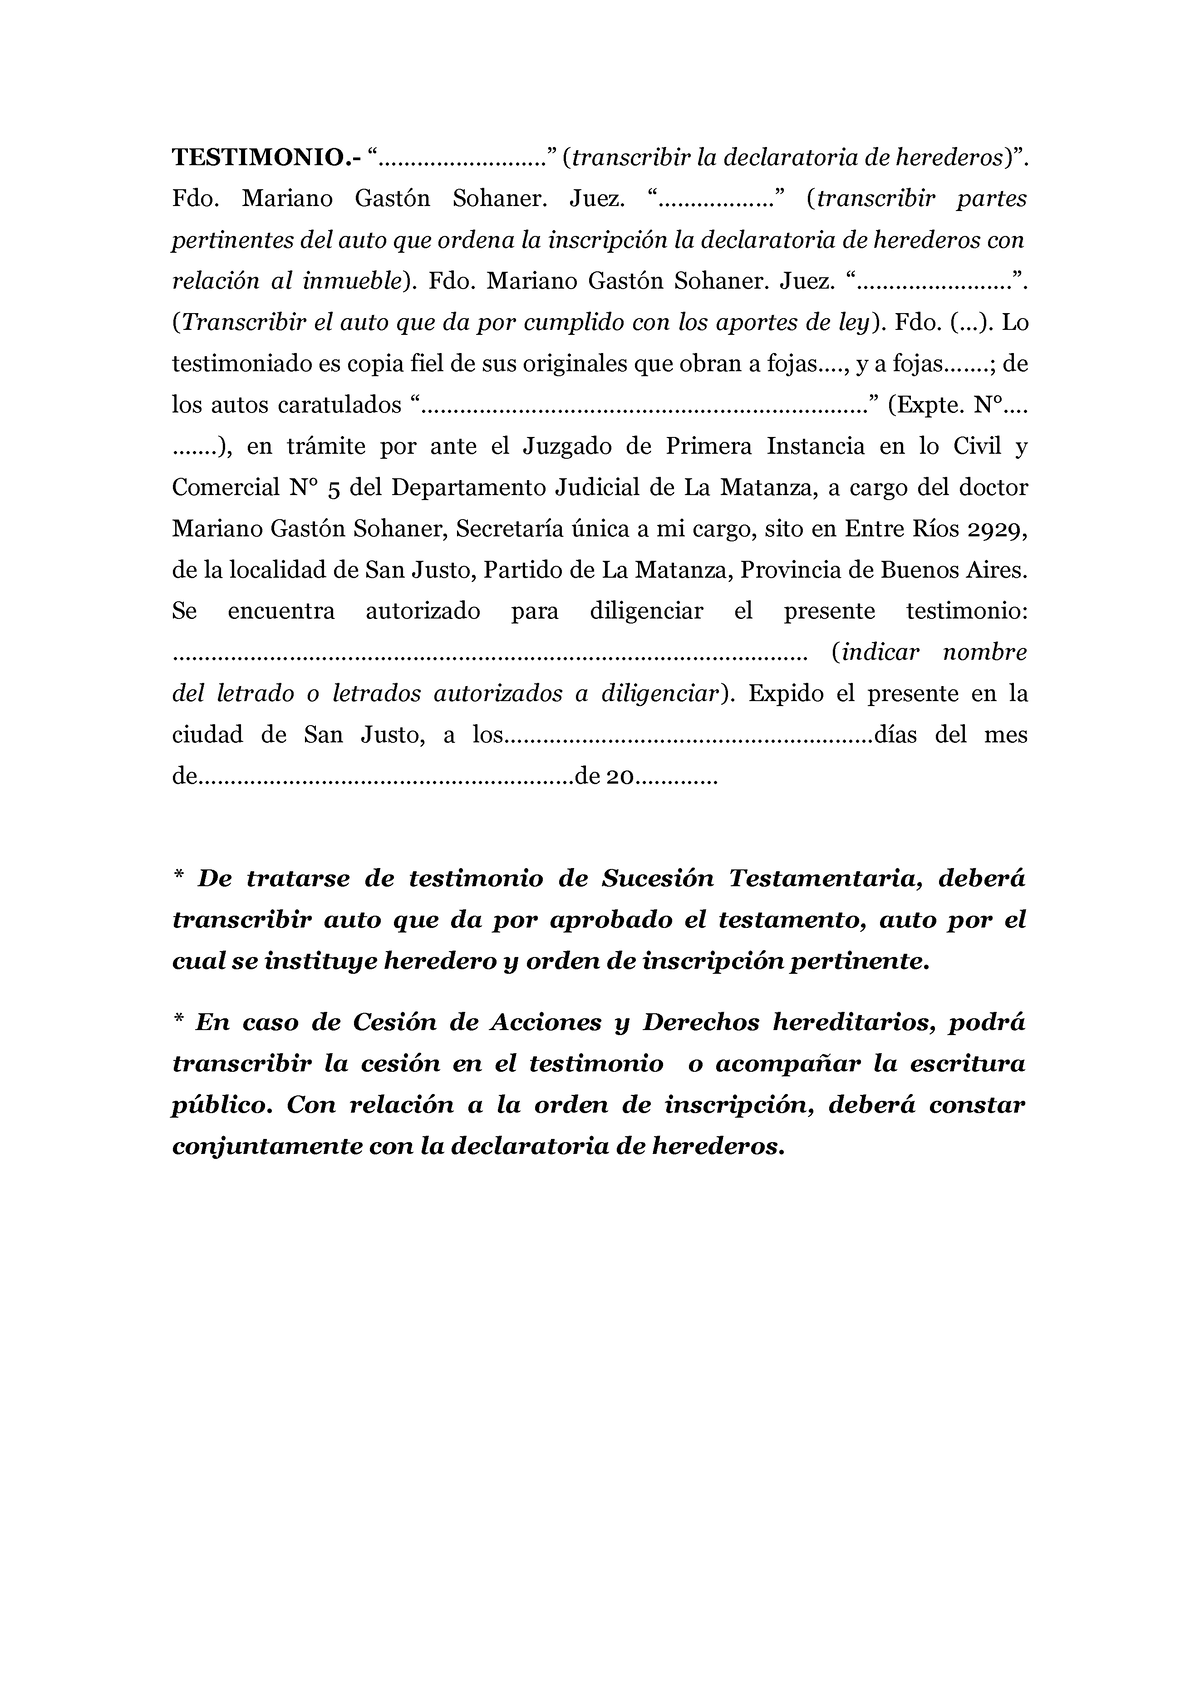 Testimonio De Inscripcion De Declaratoria De Herederos Al Registro De